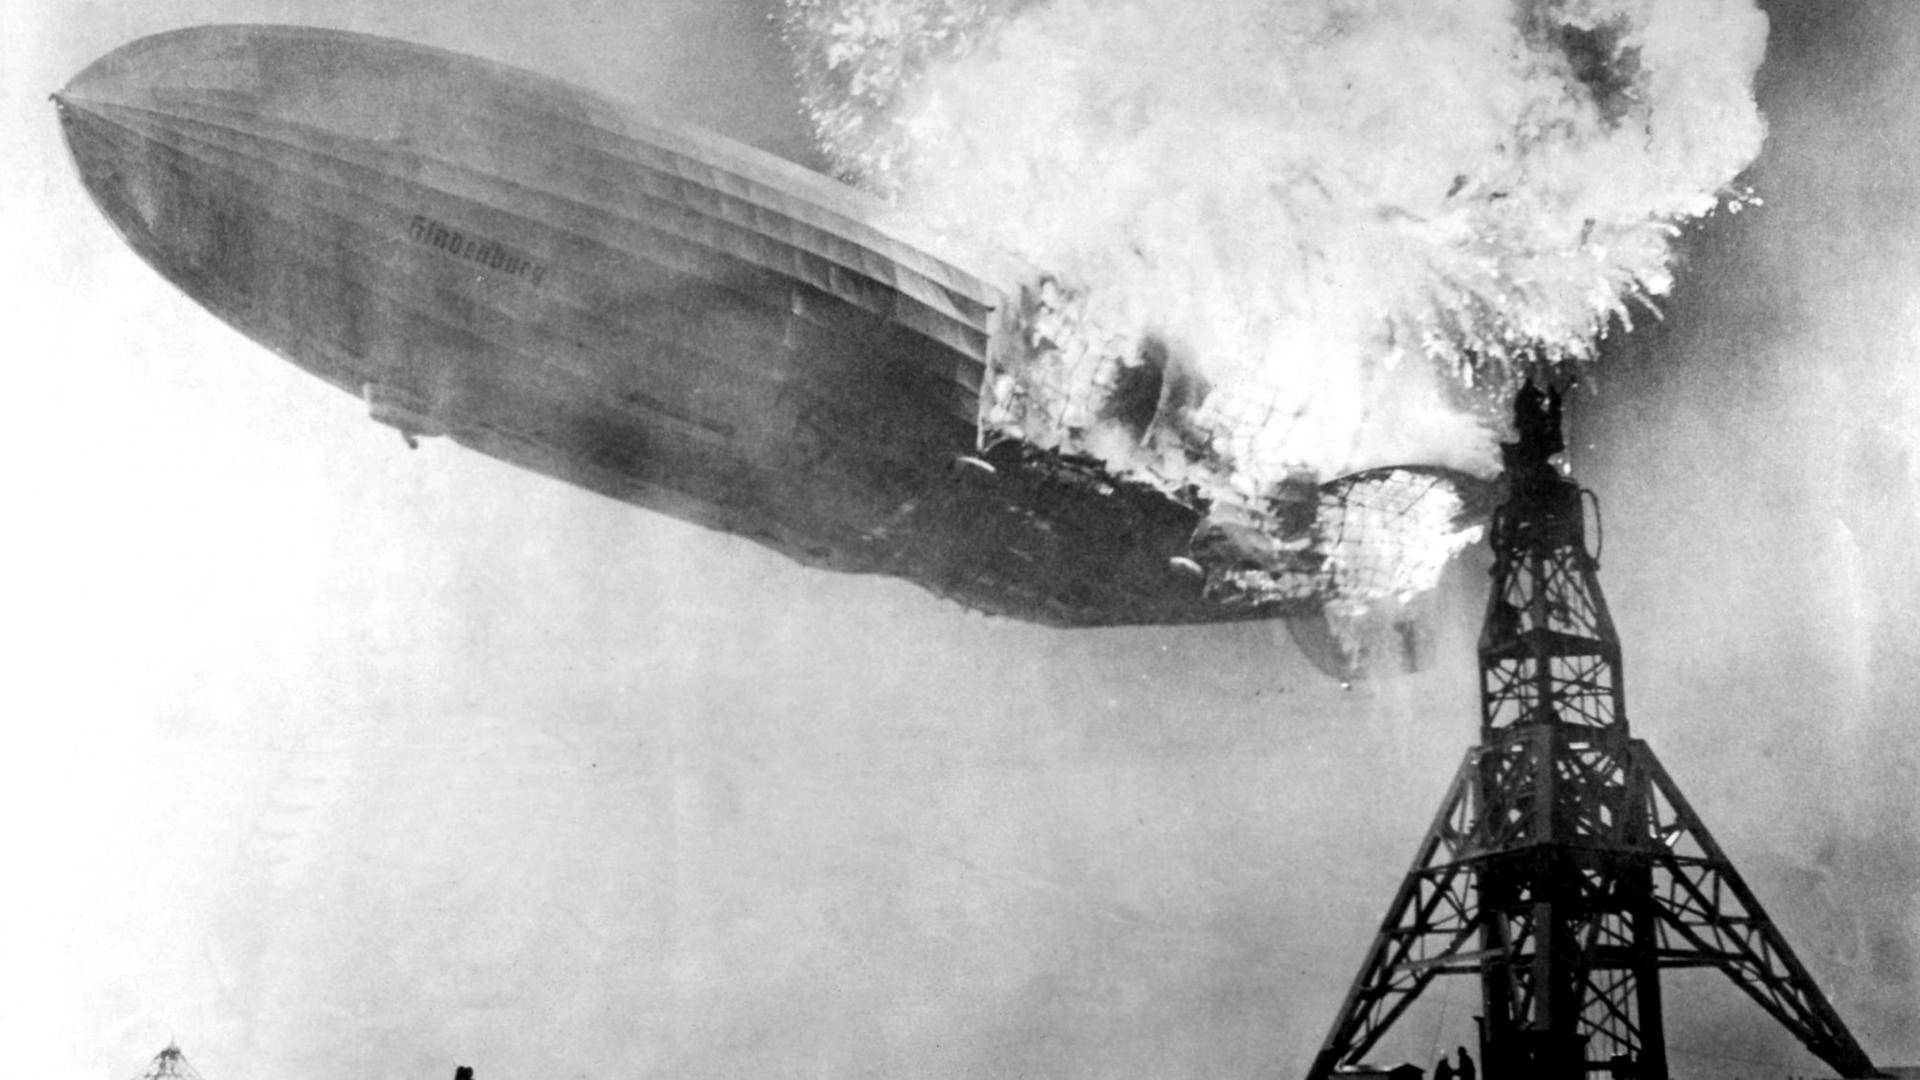 Der hintere Rumpfteil des Luftschiffs LZ 129 "Hindenburg" wird am 6. Mai 1937 bei der Landung auf dem Luftschiffhafen von Lakehurst in New Jersey bei New York von einer Explosion erschüttert. Insgesamt 36 Passagiere und Besatzungsmitglieder kamen bei der Katastrophe ums Leben. Der 100 Tonnen schwere, zu seiner Zeit größte Zeppelin der Welt brannte völlig aus, das Ende der Zeppelin-Ära begann.